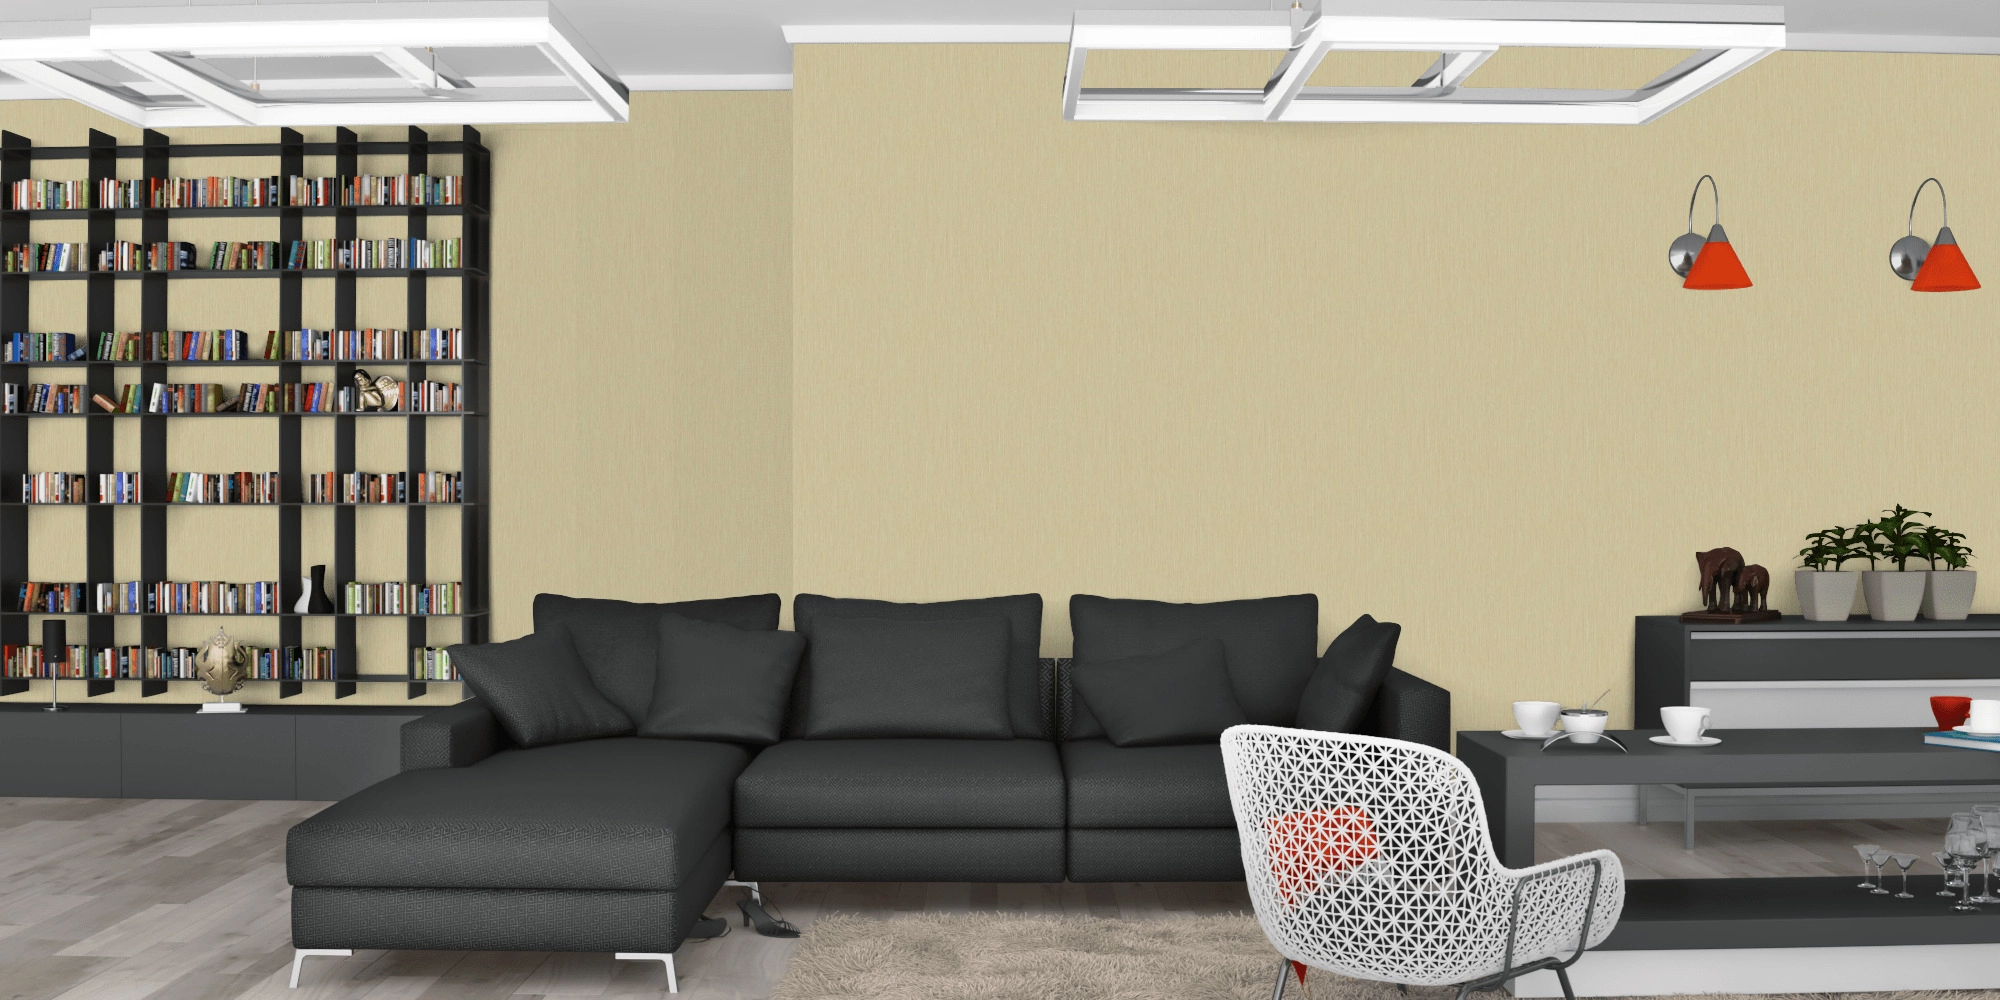 Design tapéta natúr beige struktúrált textil hatású mintával vinyl mosható